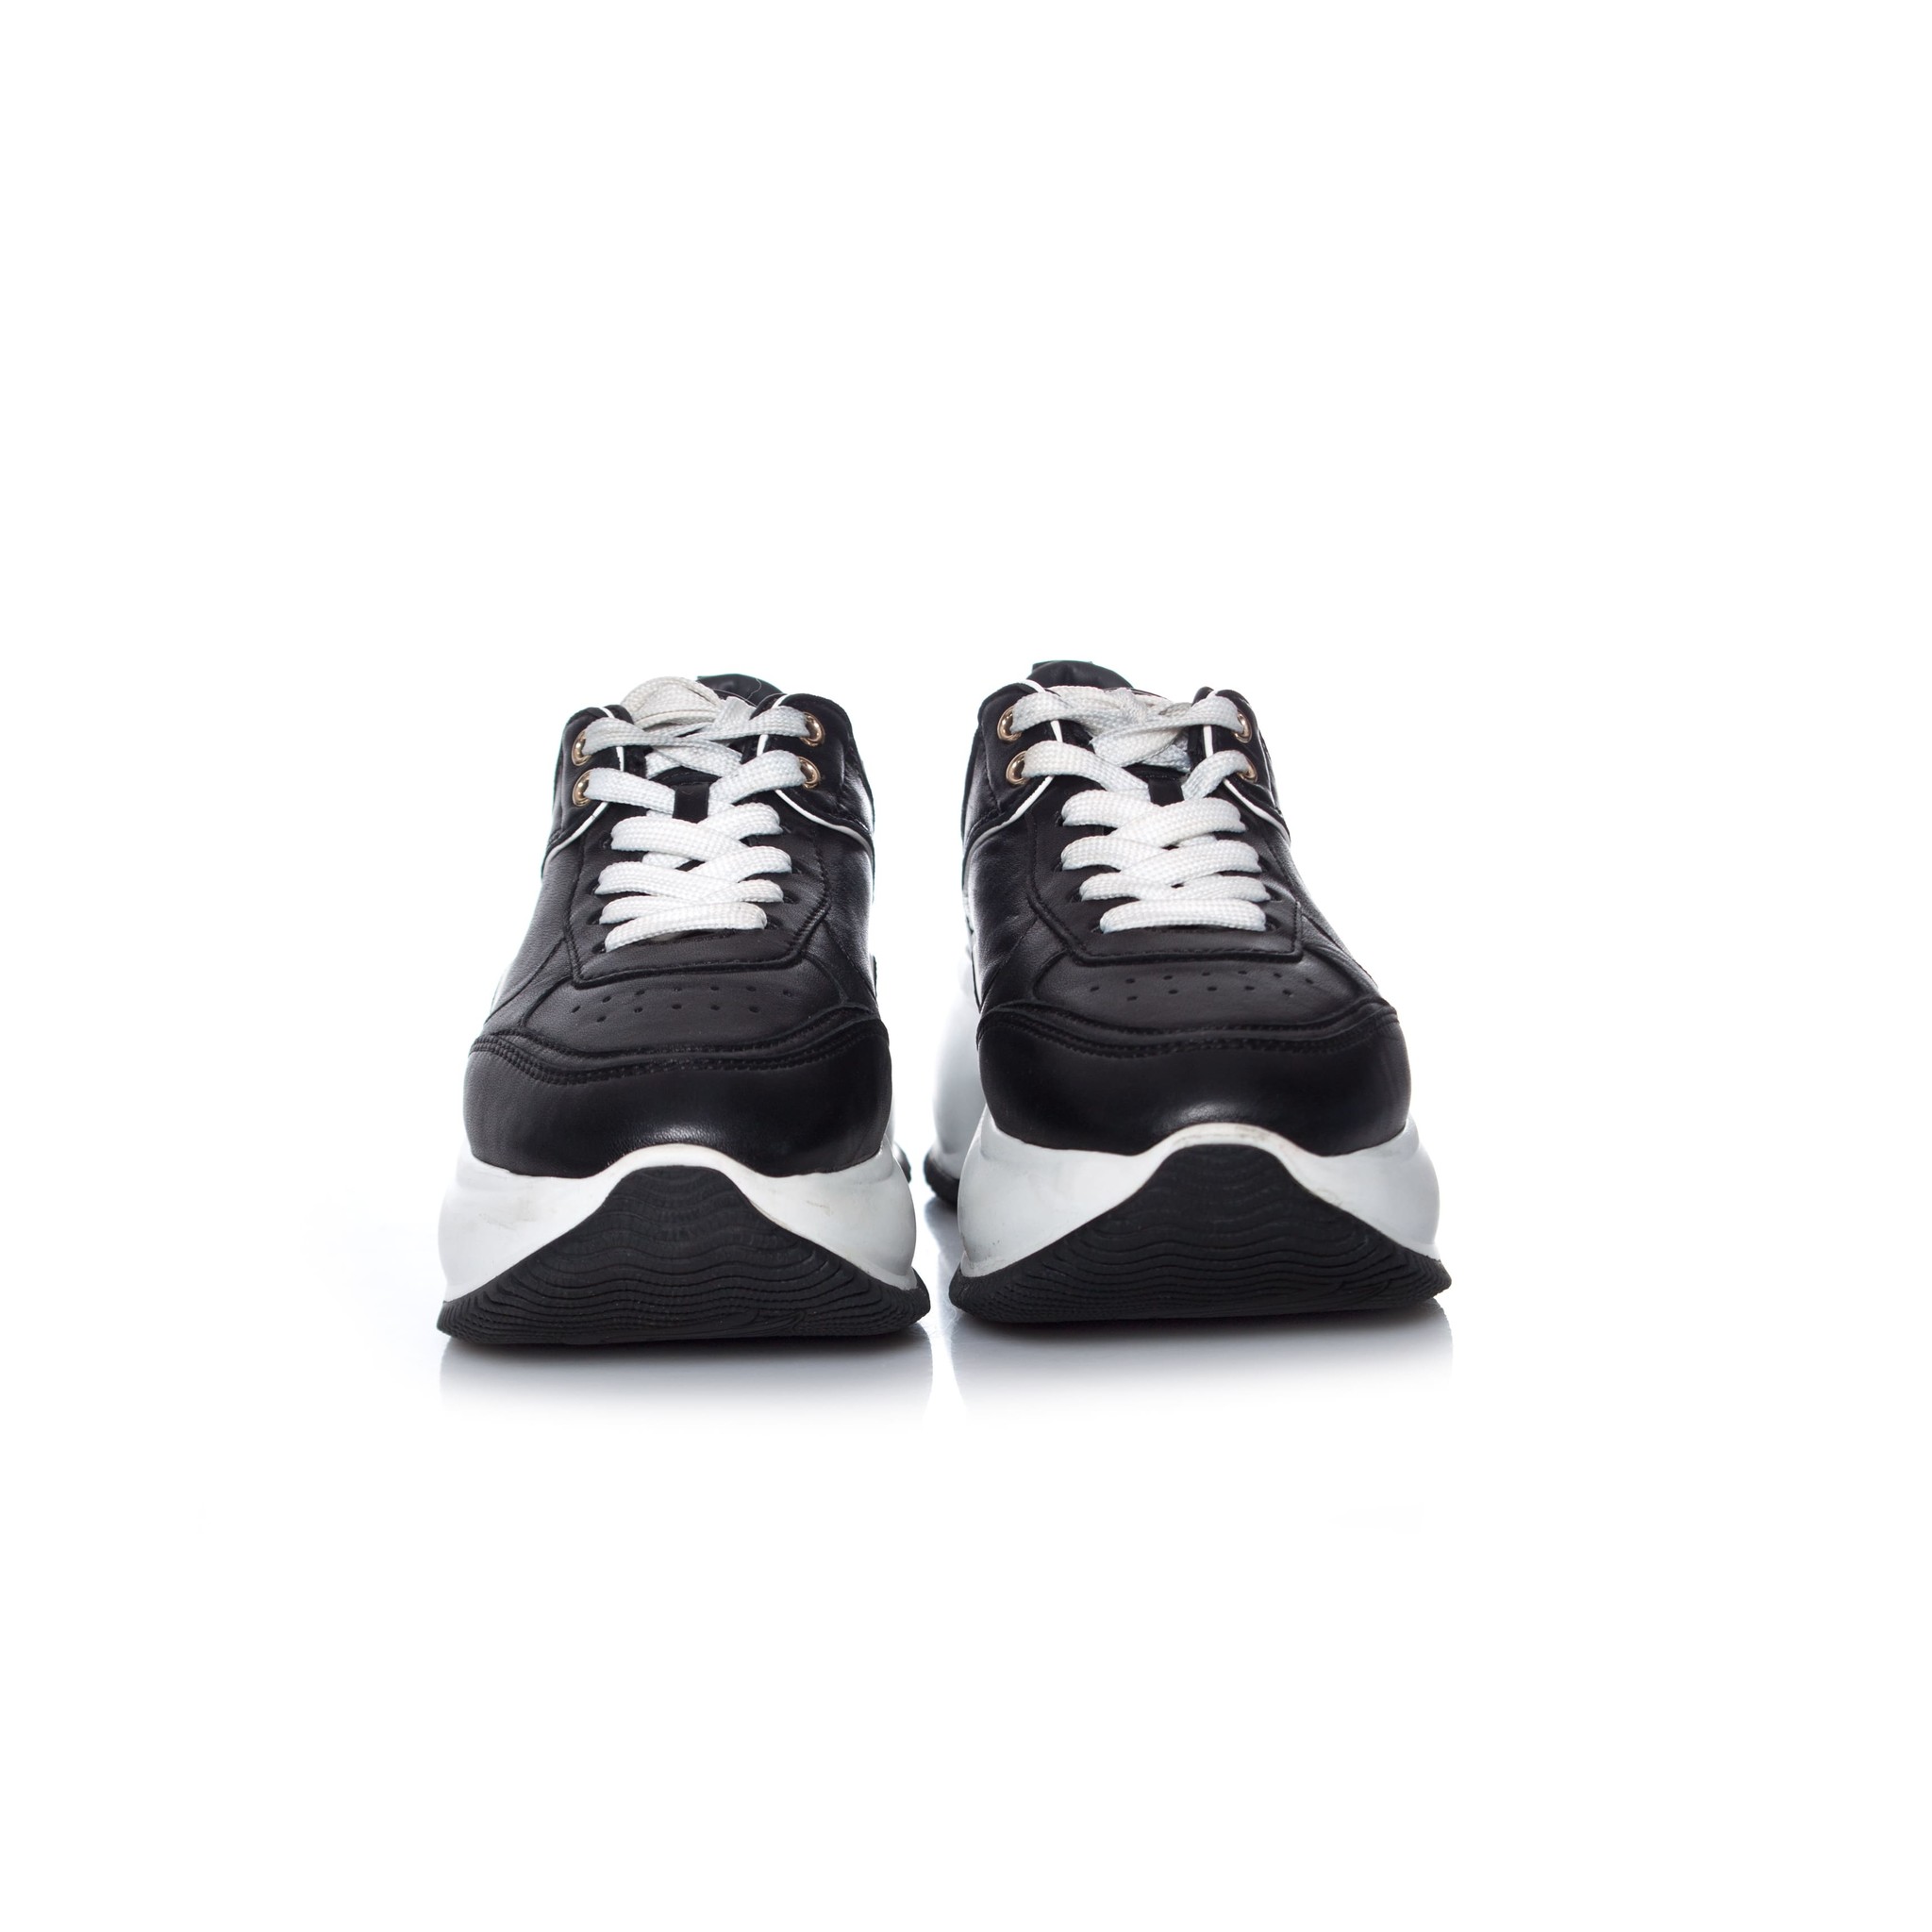 in plaats daarvan van nu af aan Rimpels Hogan, maxi active zwarte sneakers - Unique Designer Pieces